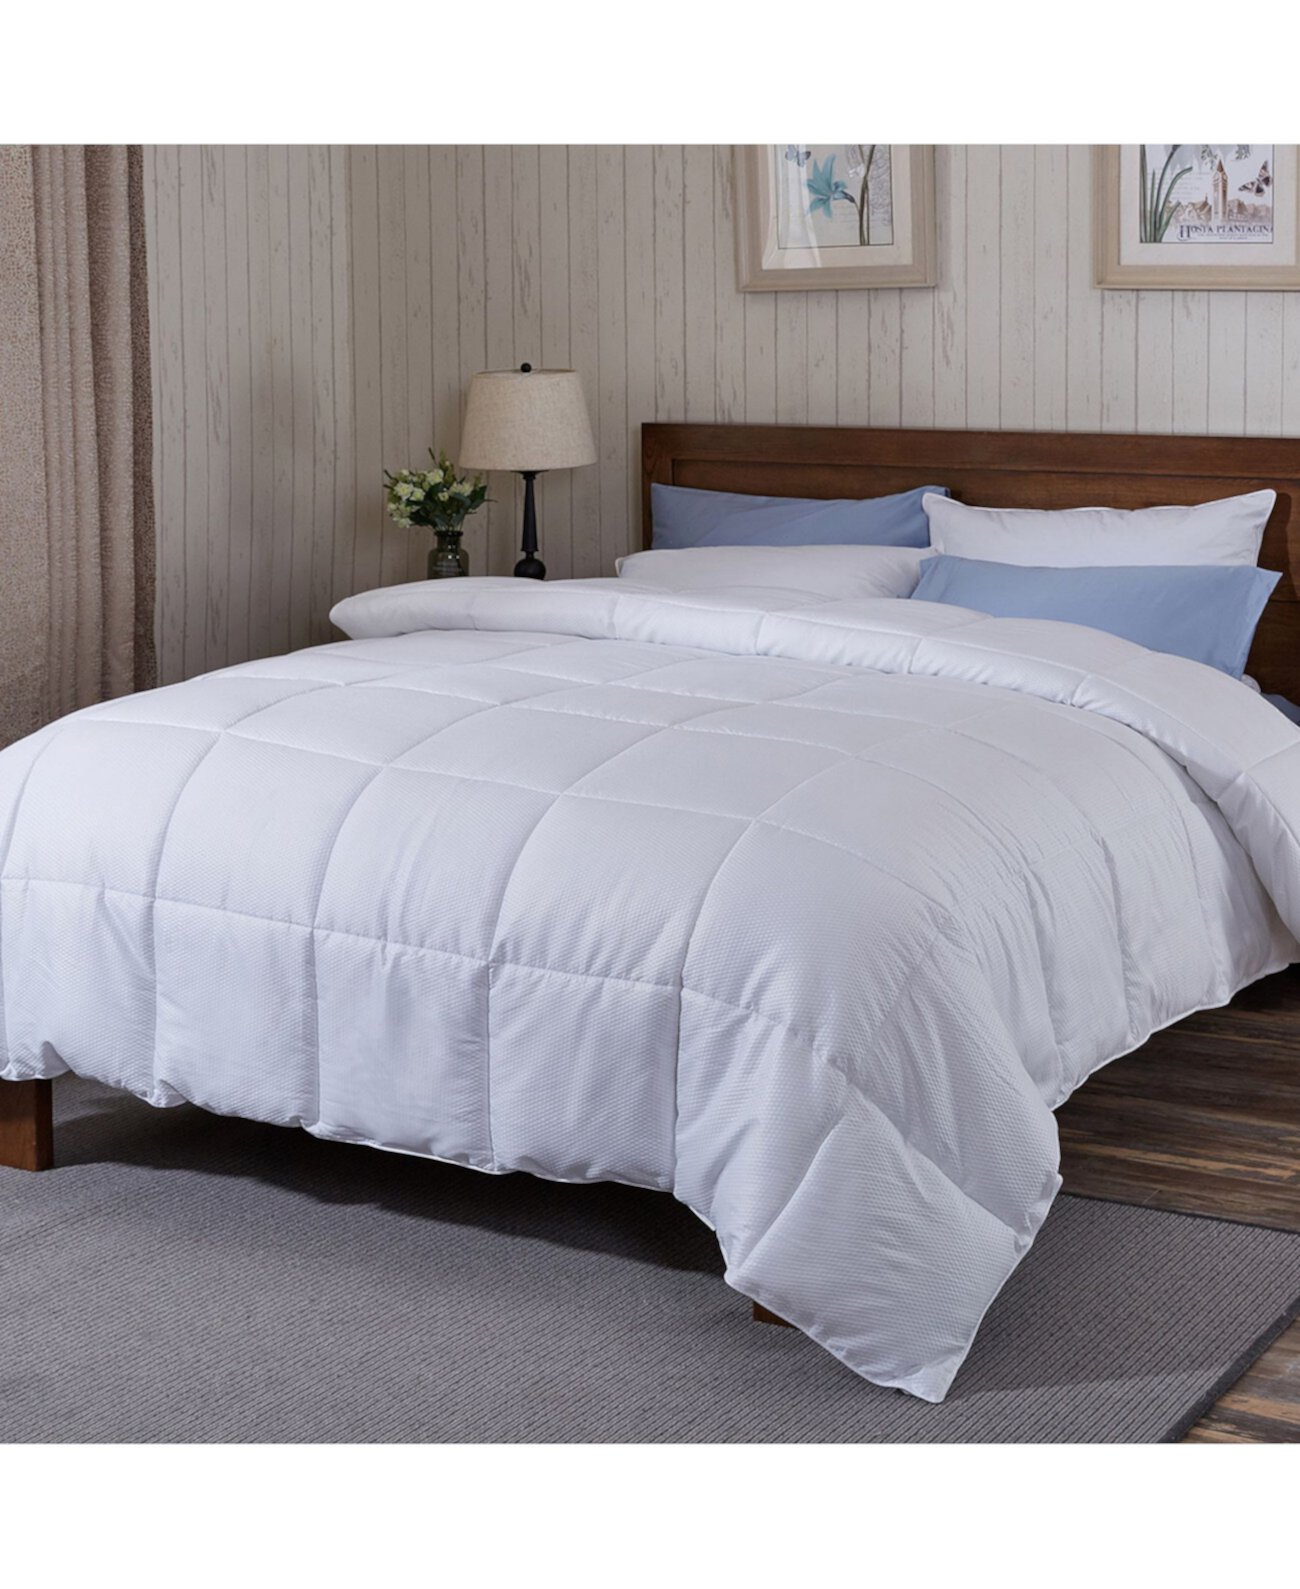 Всесезонное одеяло с двумя односпальными кроватями Puredown